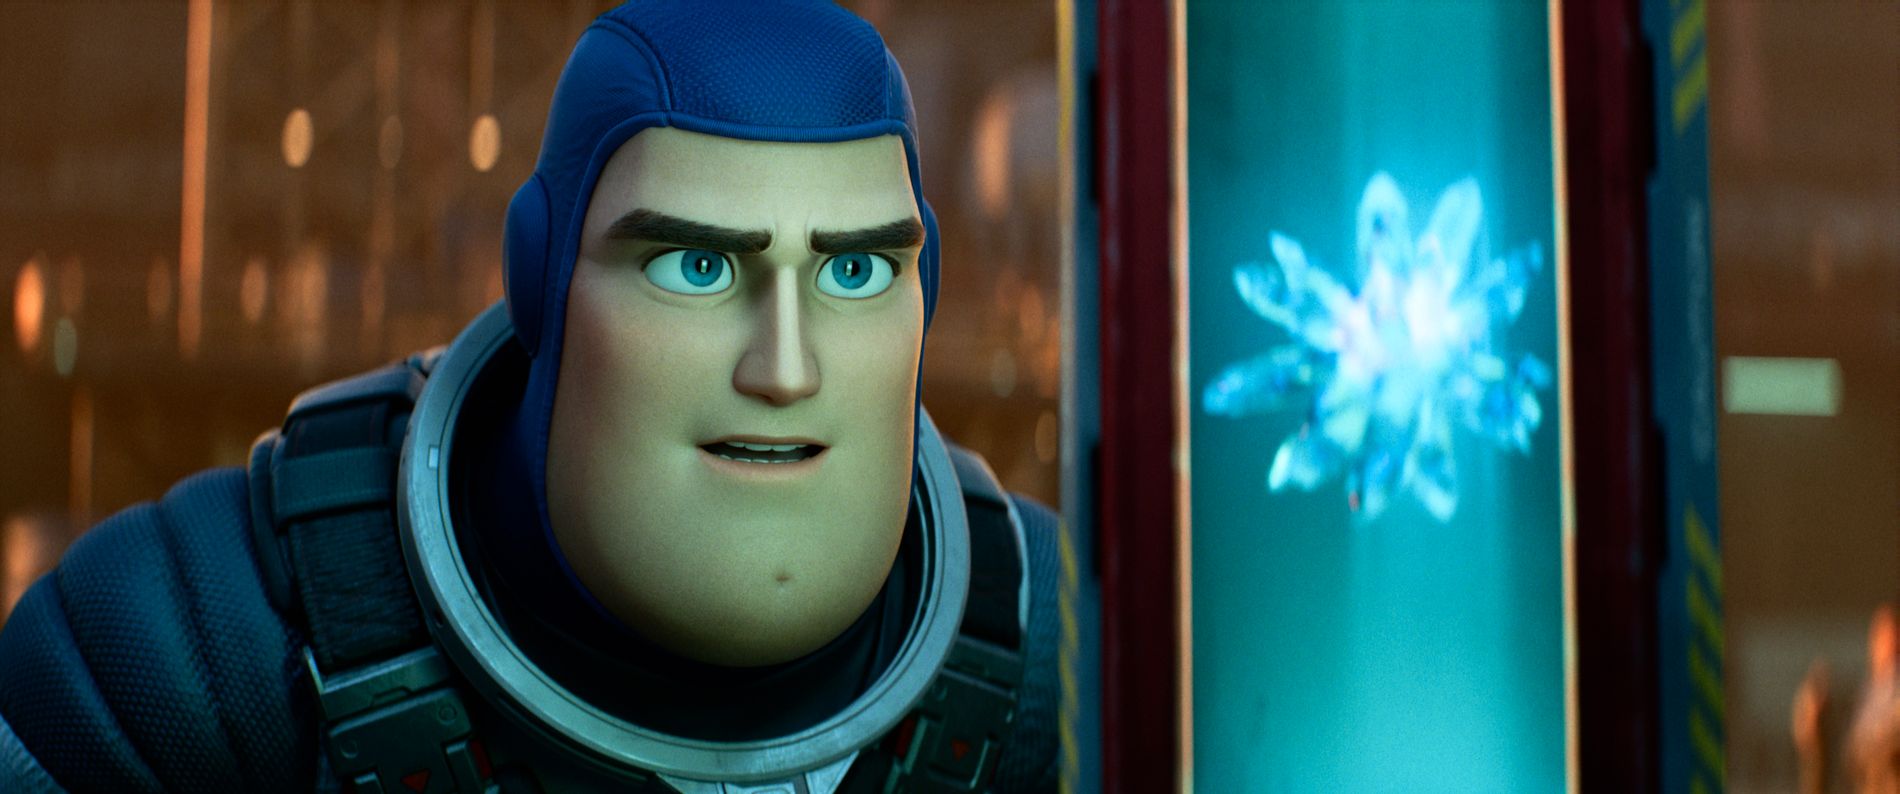 «Lightyear» – med et budsjett på 200 millioner dollar – forventes å bli en av Disneys store animasjonsfilmer i år. Chris Evans låner stemmen til hovedkarakteren «Buzz Lightyear». 